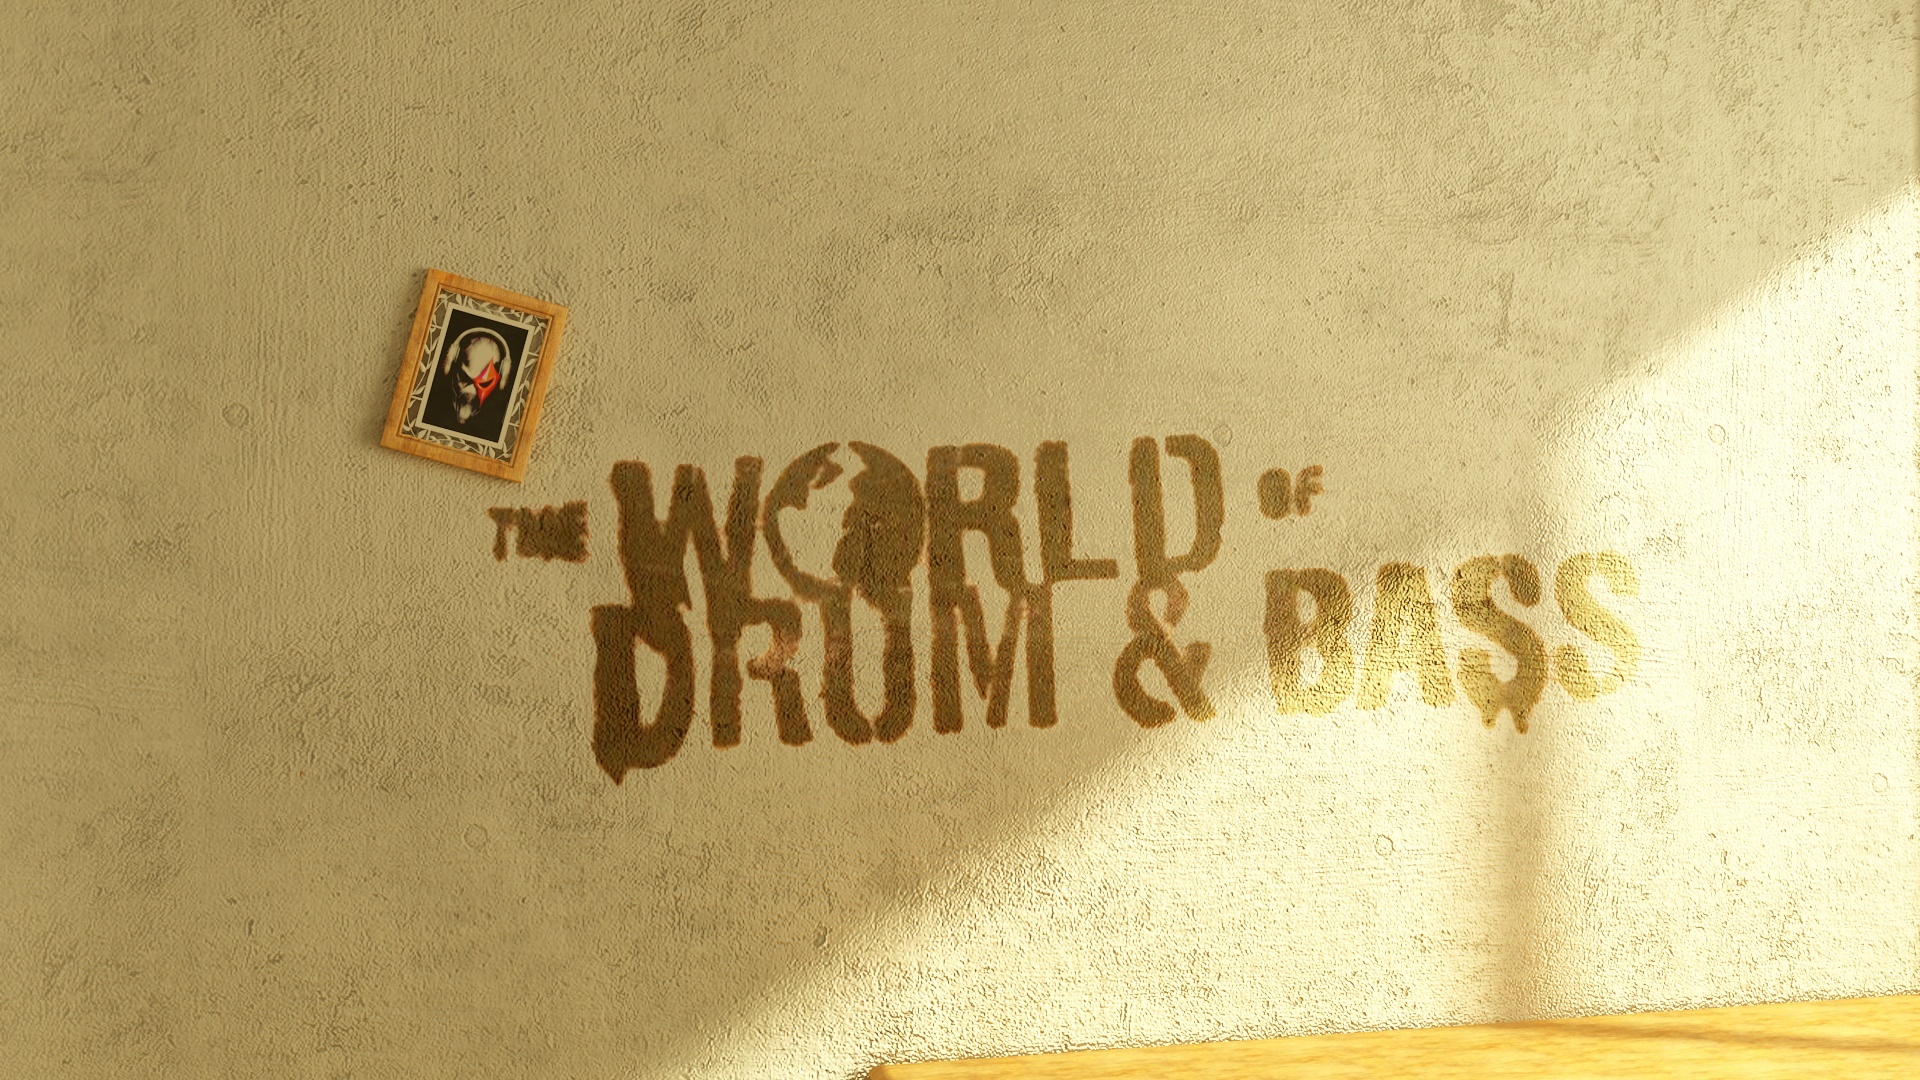 drum n bass, Drum, Bass, Dnb, Electronic, Drum and bass, Graffiti Wallpaper